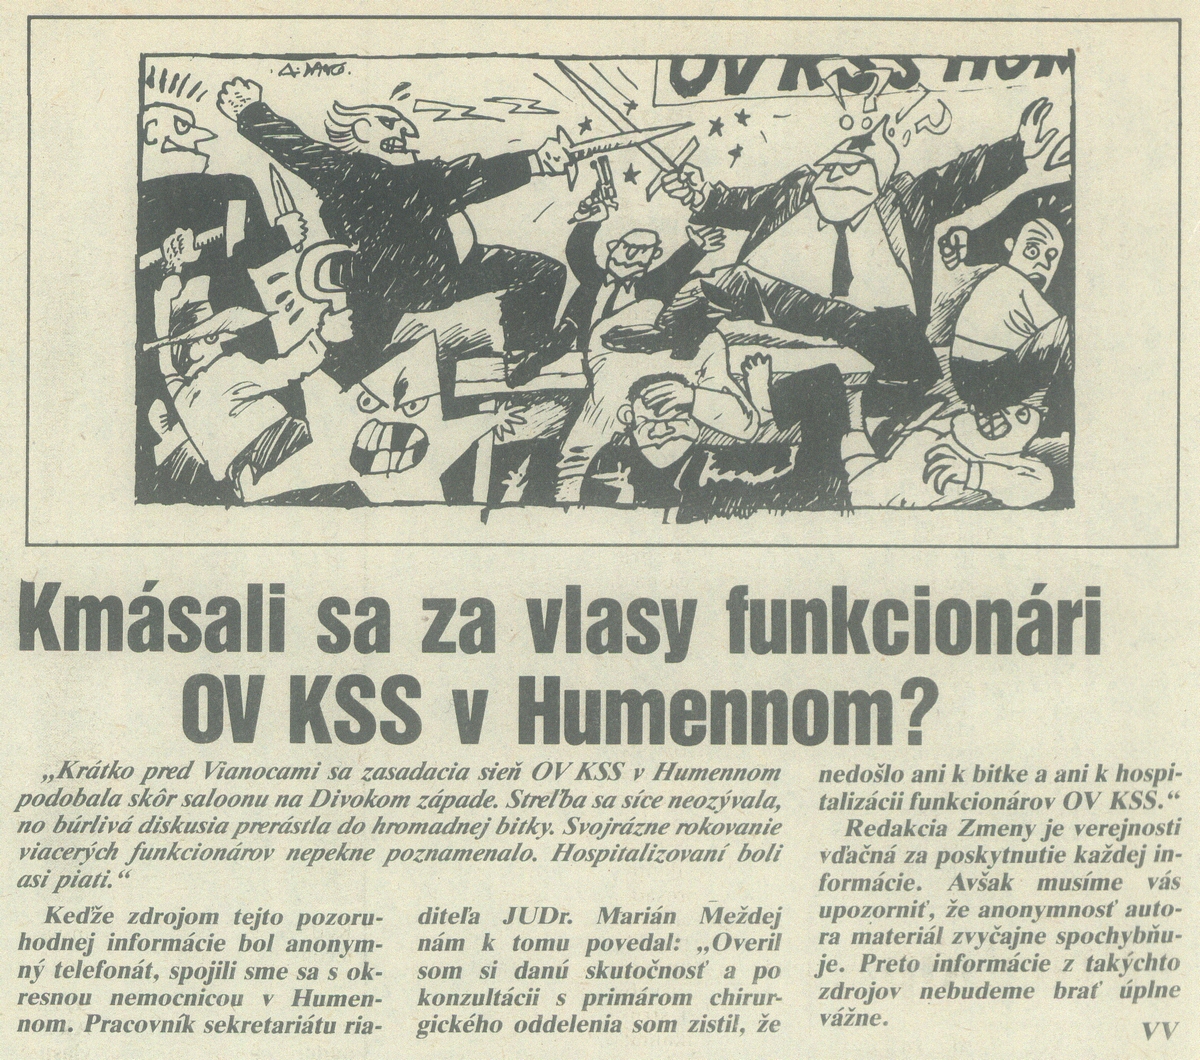 Bitka na OV KSS v Humennom, článok v časopise Zmena. 1989. Univerzitná knižnica v Bratislave